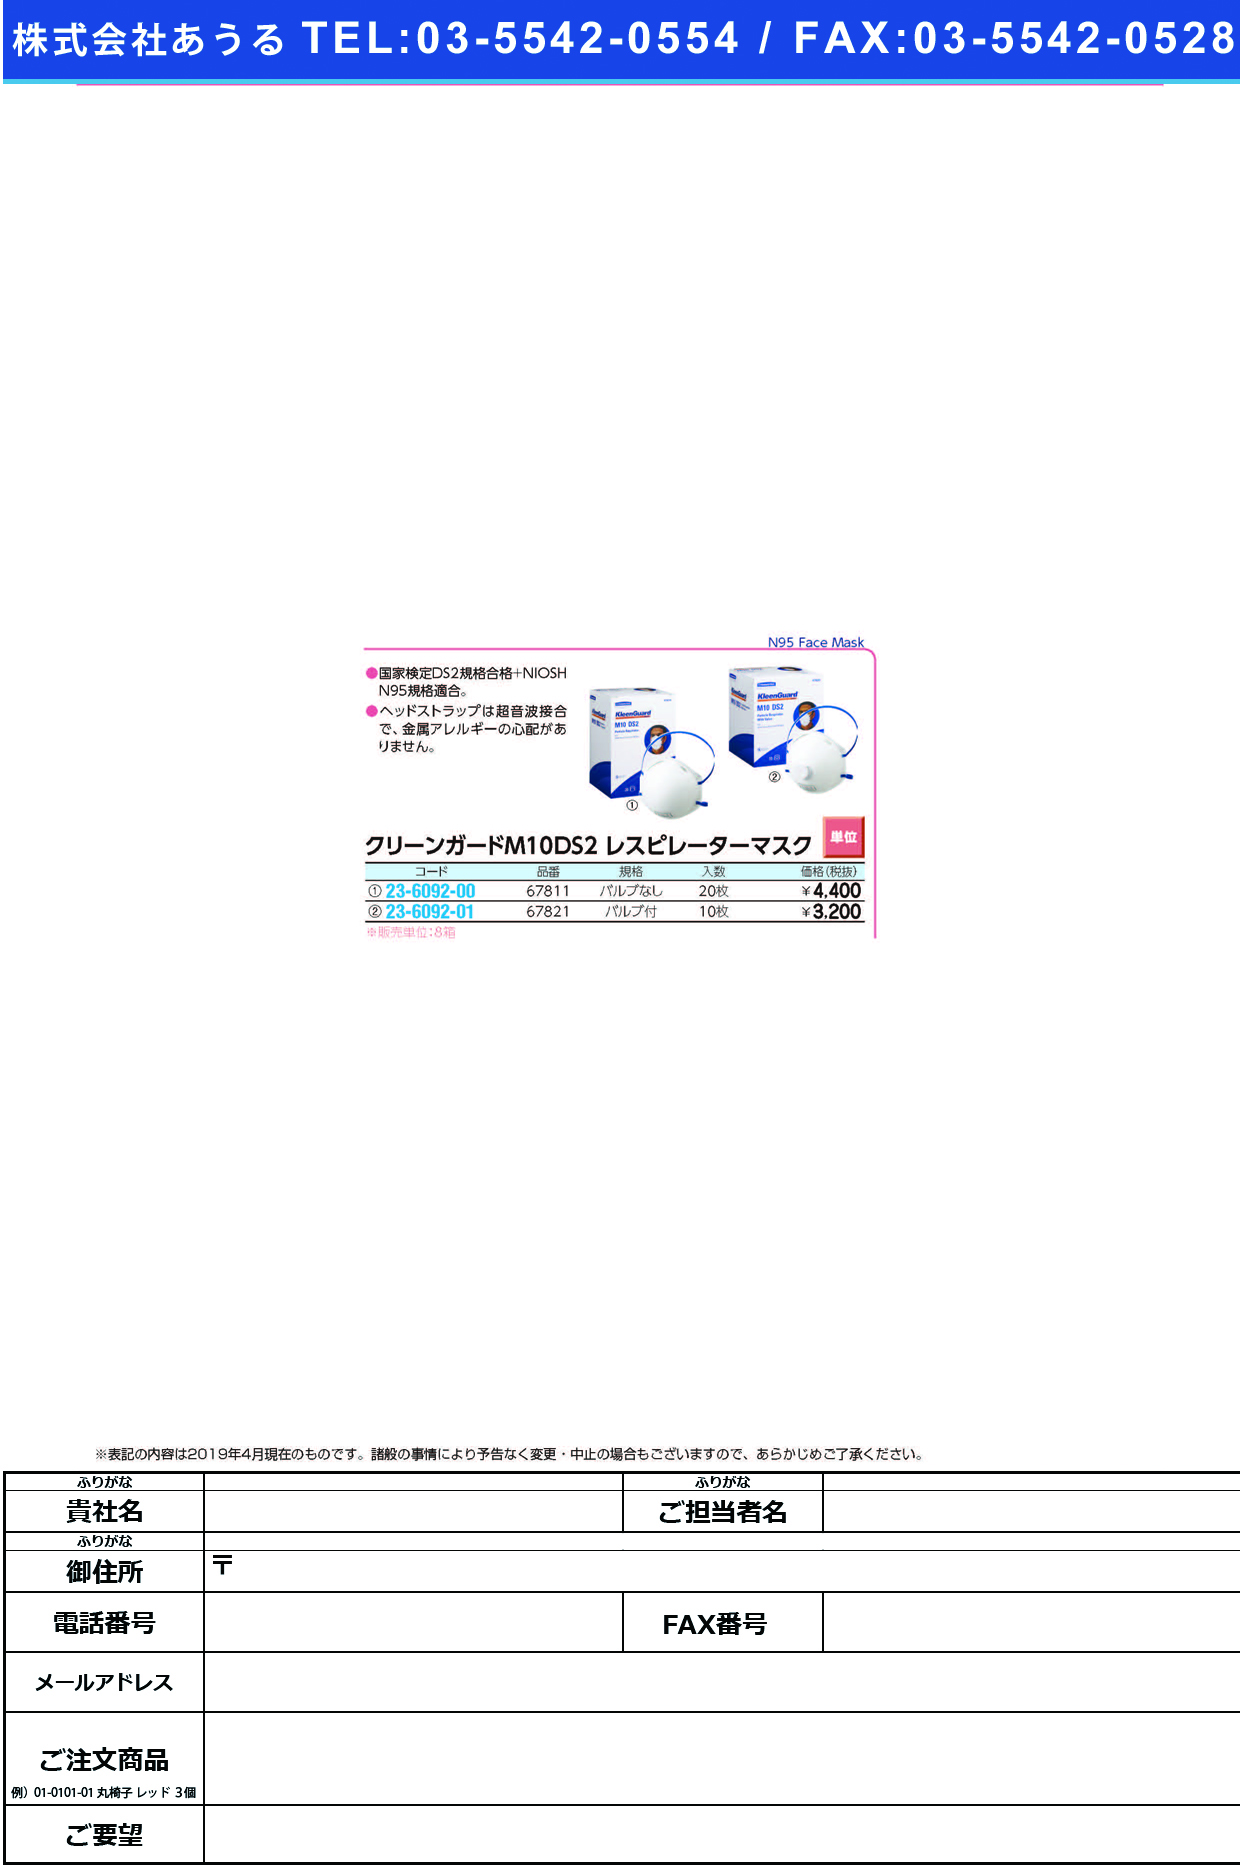 クリーンガードレスピレーターマスク 67821(ﾊﾞﾙﾌﾞﾂｷ)10ﾏｲｲﾘ ｸﾘｰﾝｶﾞｰﾄﾞﾚｽﾋﾟﾚｰﾀｰﾏｽｸ(日本製紙クレシア)